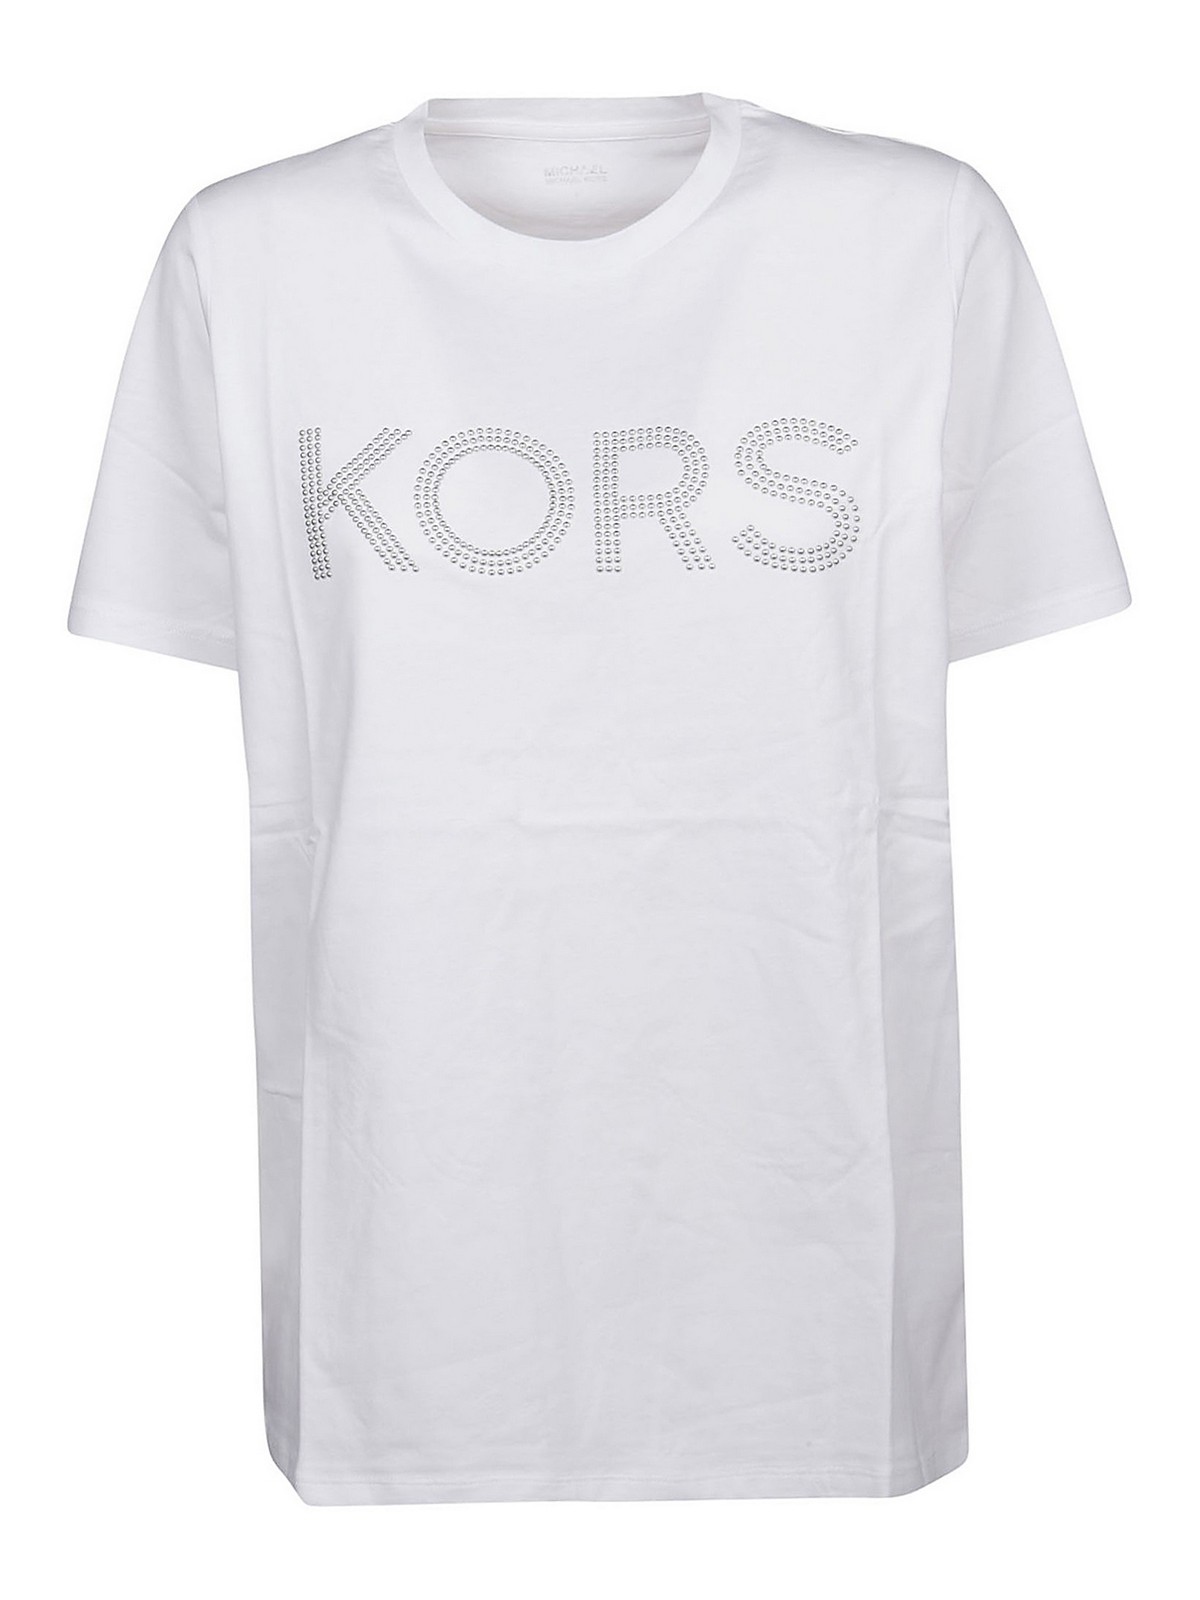 Michael Kors Shiny Lettering T-shirt In White